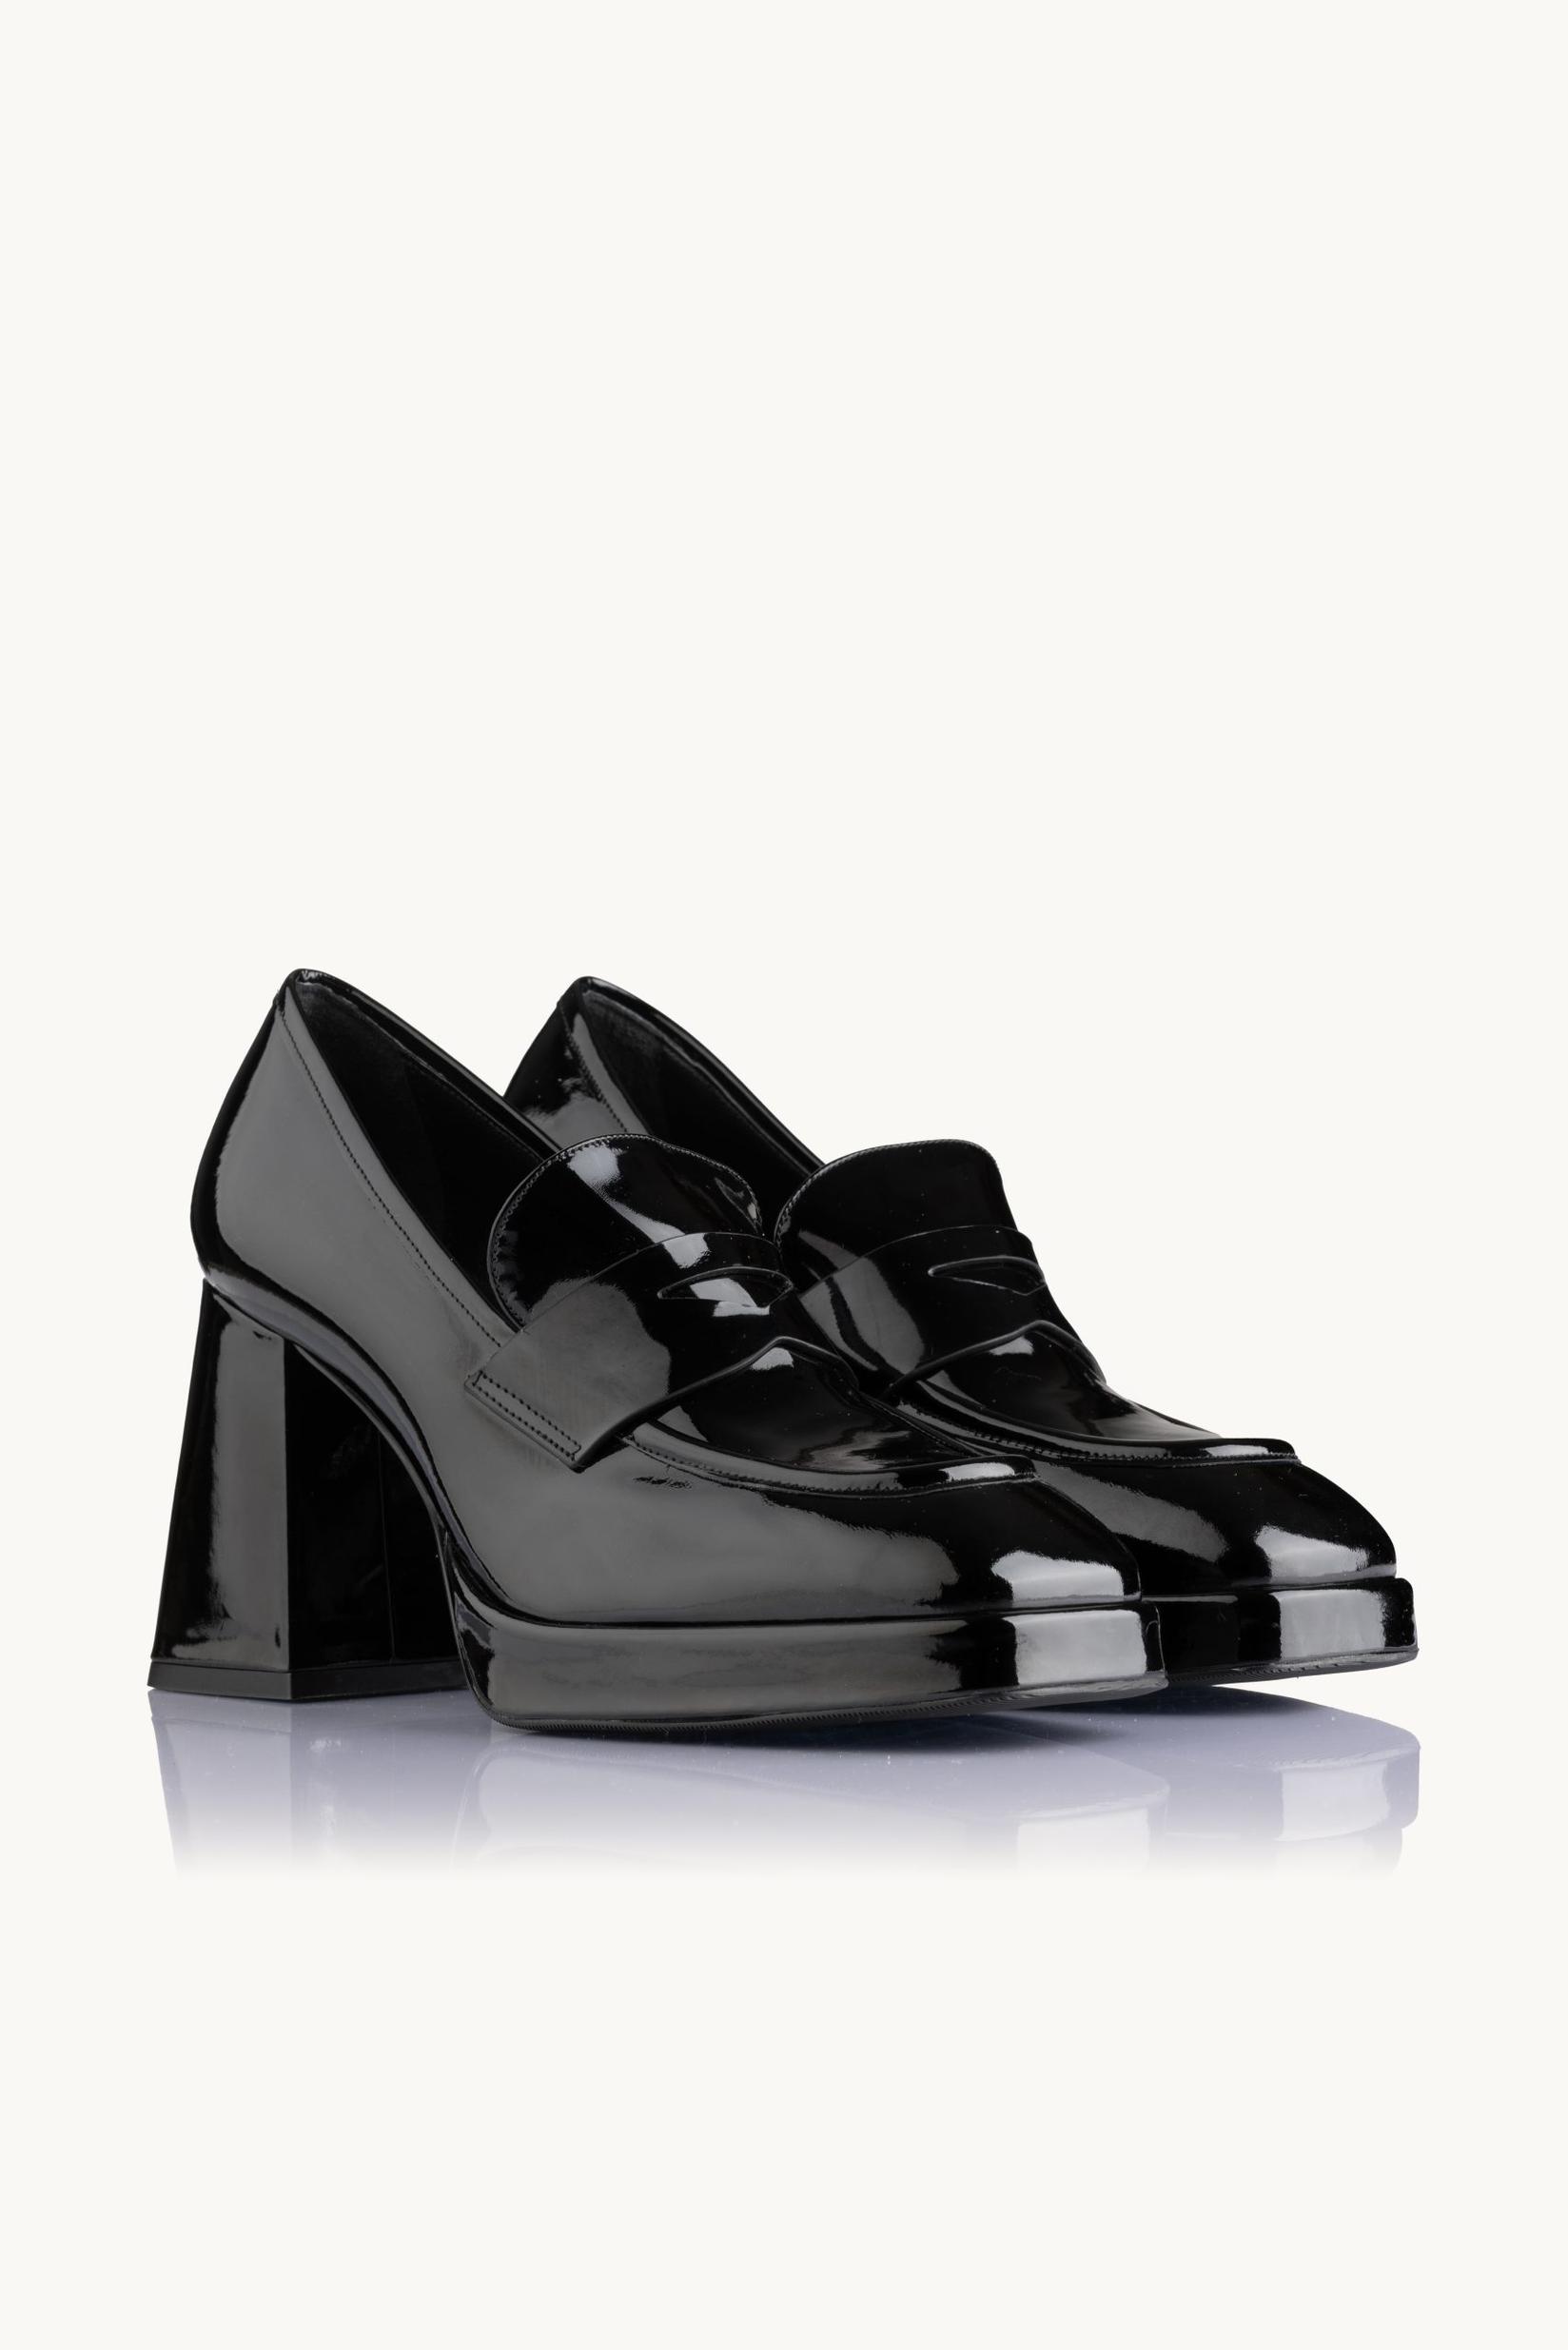 Selected image for NAKA Ženske cipele Starlit Sparkle crne